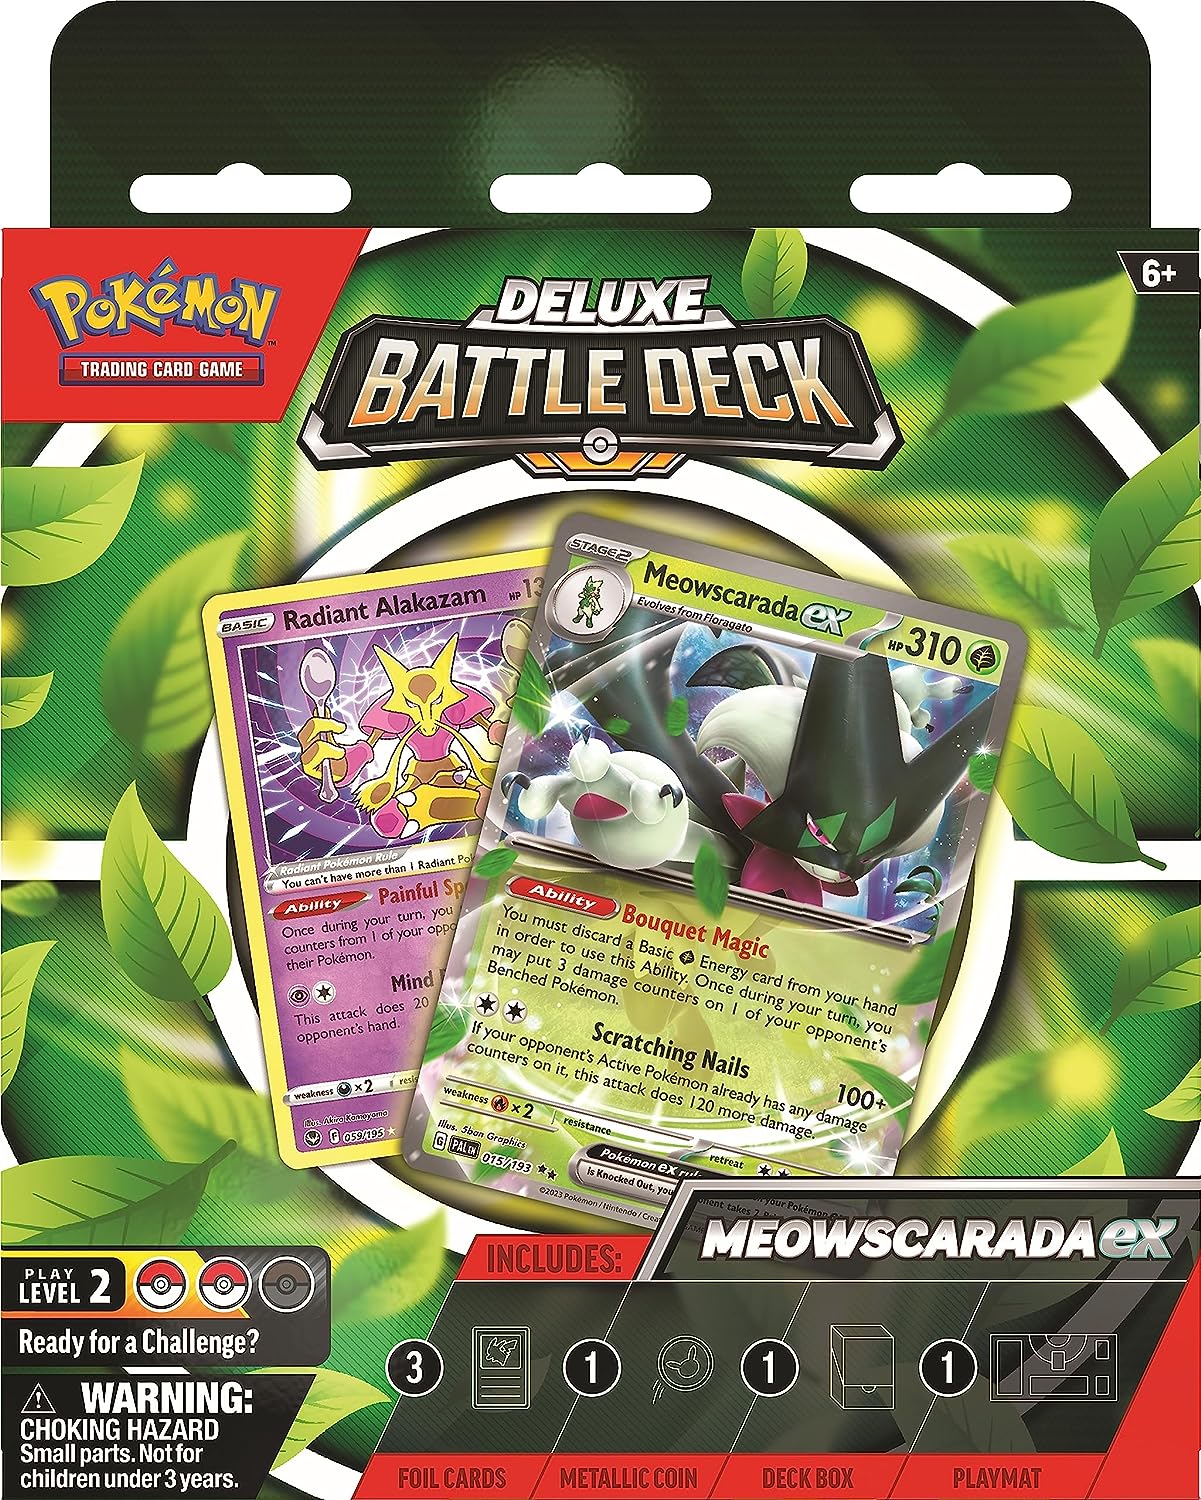 Pokemon - Deluxe Battle Battle Deck (Meowscarda/Quaquaval)